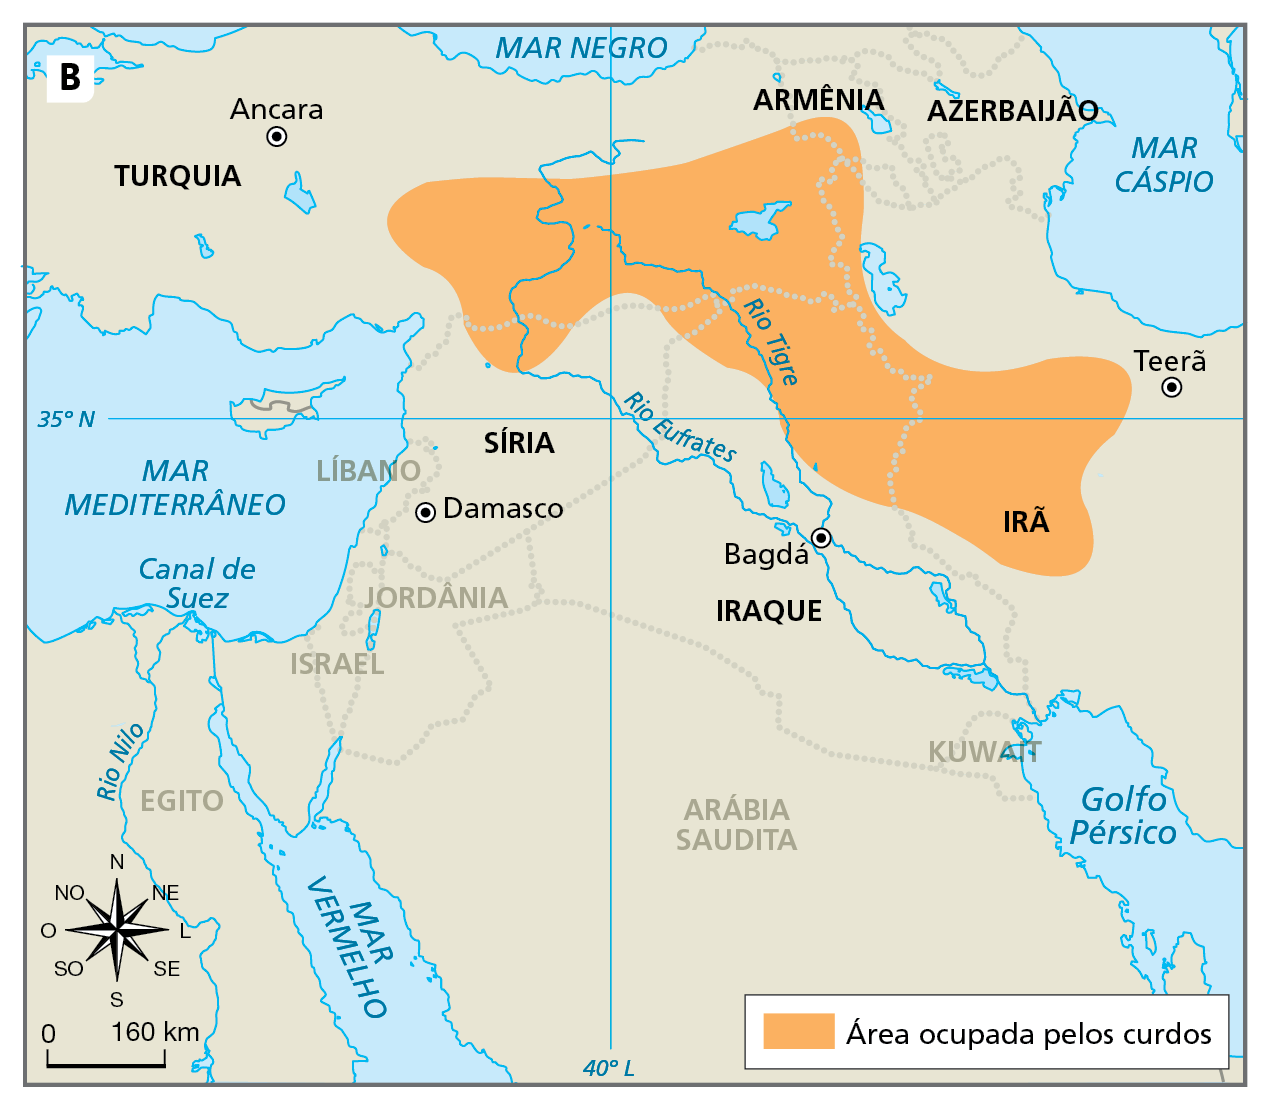 Mapa B. O Curdistão histórico. Mapa de parte do território asiático representando parte da Arábia Saudita, o Kuwait, Iraque, Síria, Líbano, Jordânia, Israel, Turquia, Armênia, Azerbaijão e Irã. Área ocupada pelos curdos, na cor laranja: estende-se na porção centro sul e oeste da Turquia, avançando em parte do território da Armênia; chega ao norte da Síria, às margens do Rio Eufrates, ao norte, nordeste e leste do território do Iraque, até avançar na porção oeste do Irã. Na Turquia, a área ocupada pelos curdos é banhada em grande parte pelos rios Tigre e Eufrates e, no Iraque, pelo rio Tigre.
Na parte inferior, rosa dos ventos e escala de 0 a 160 quilômetros.